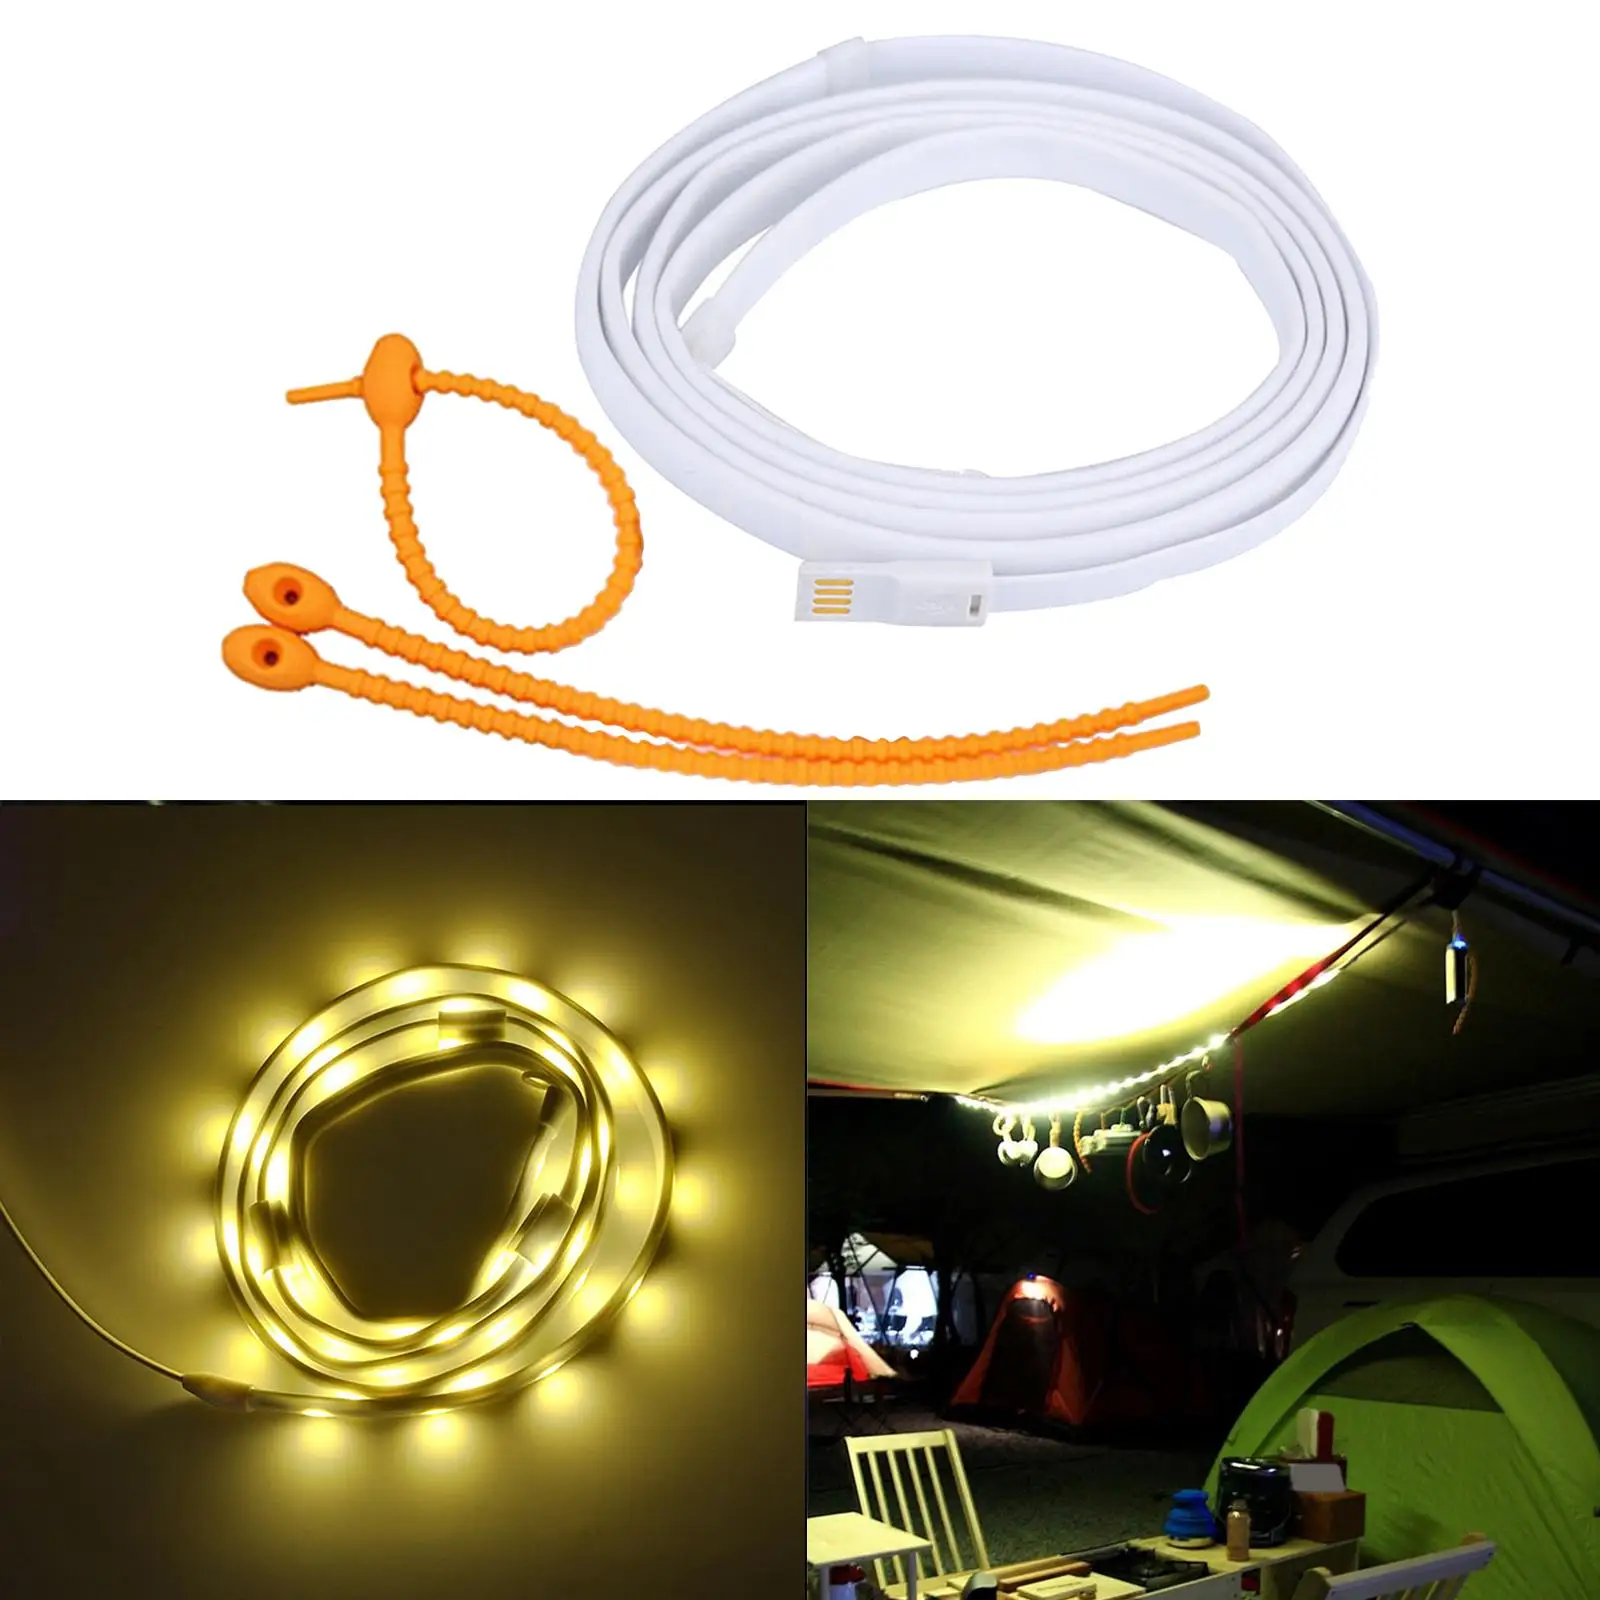 LED Strip Light Outdoor USB LED String Light Tube Flexible LED Tape White Light Stripe Lamp for Camping Hiking